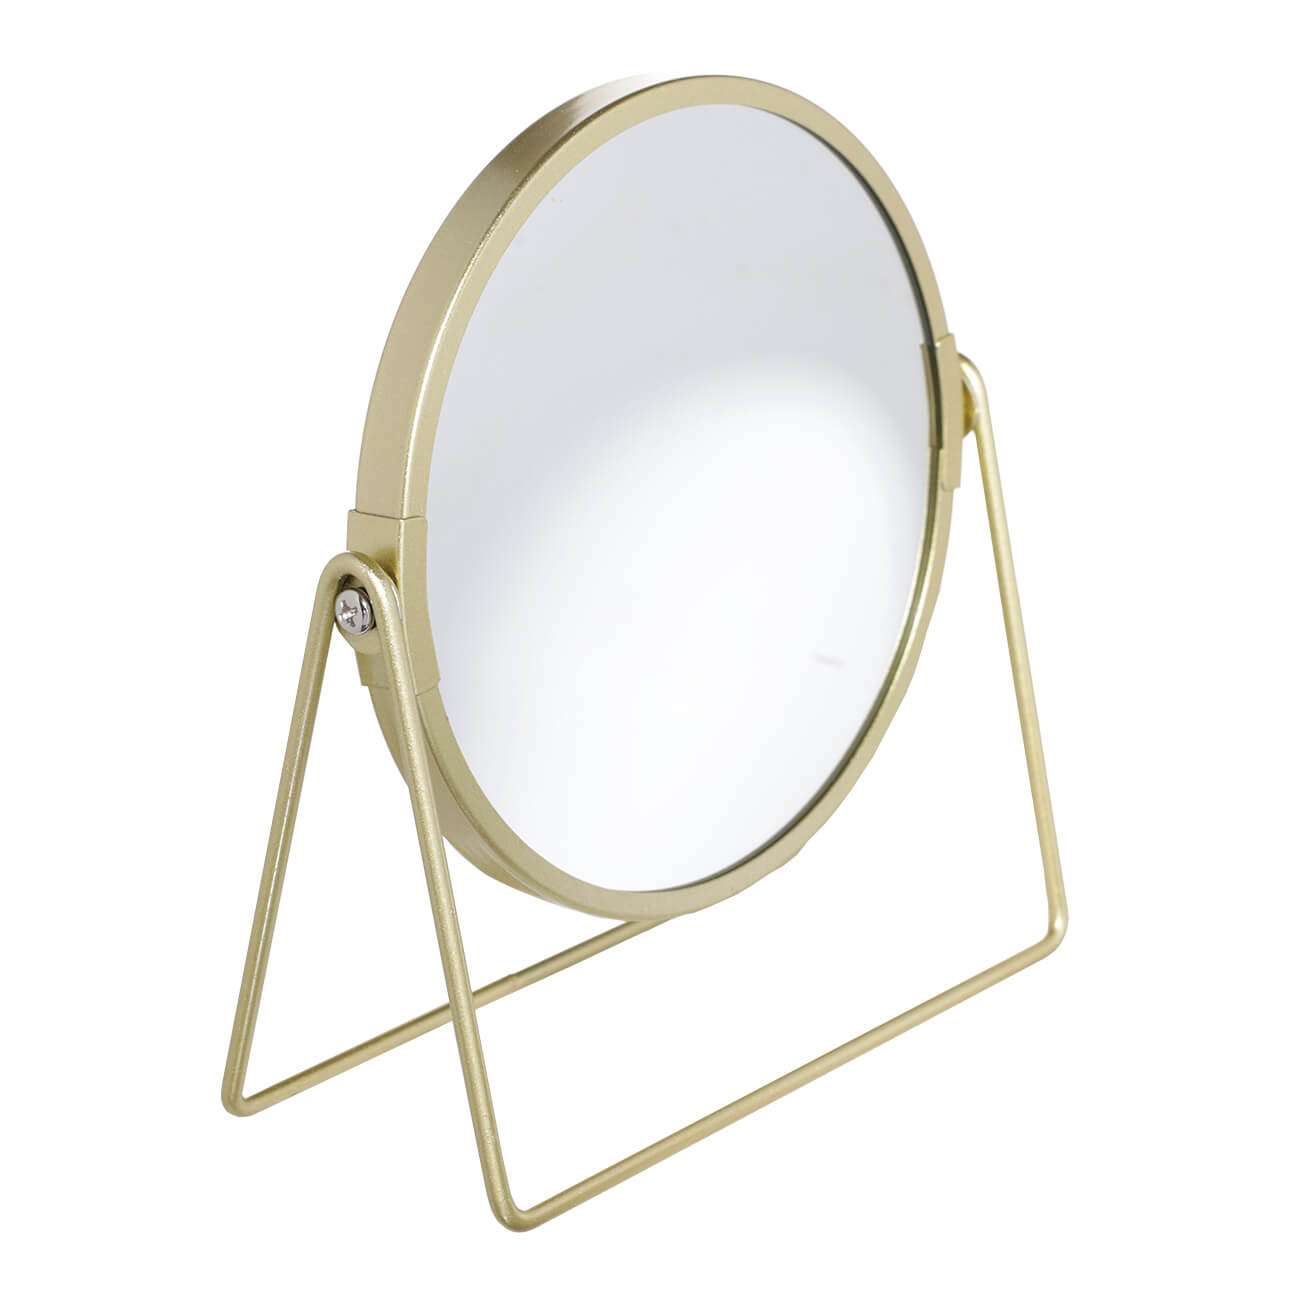 Зеркало настольное, 18 см, двустороннее, металл, круглое, золотистое, Freya зеркало настольное двустороннее beurer bs 49